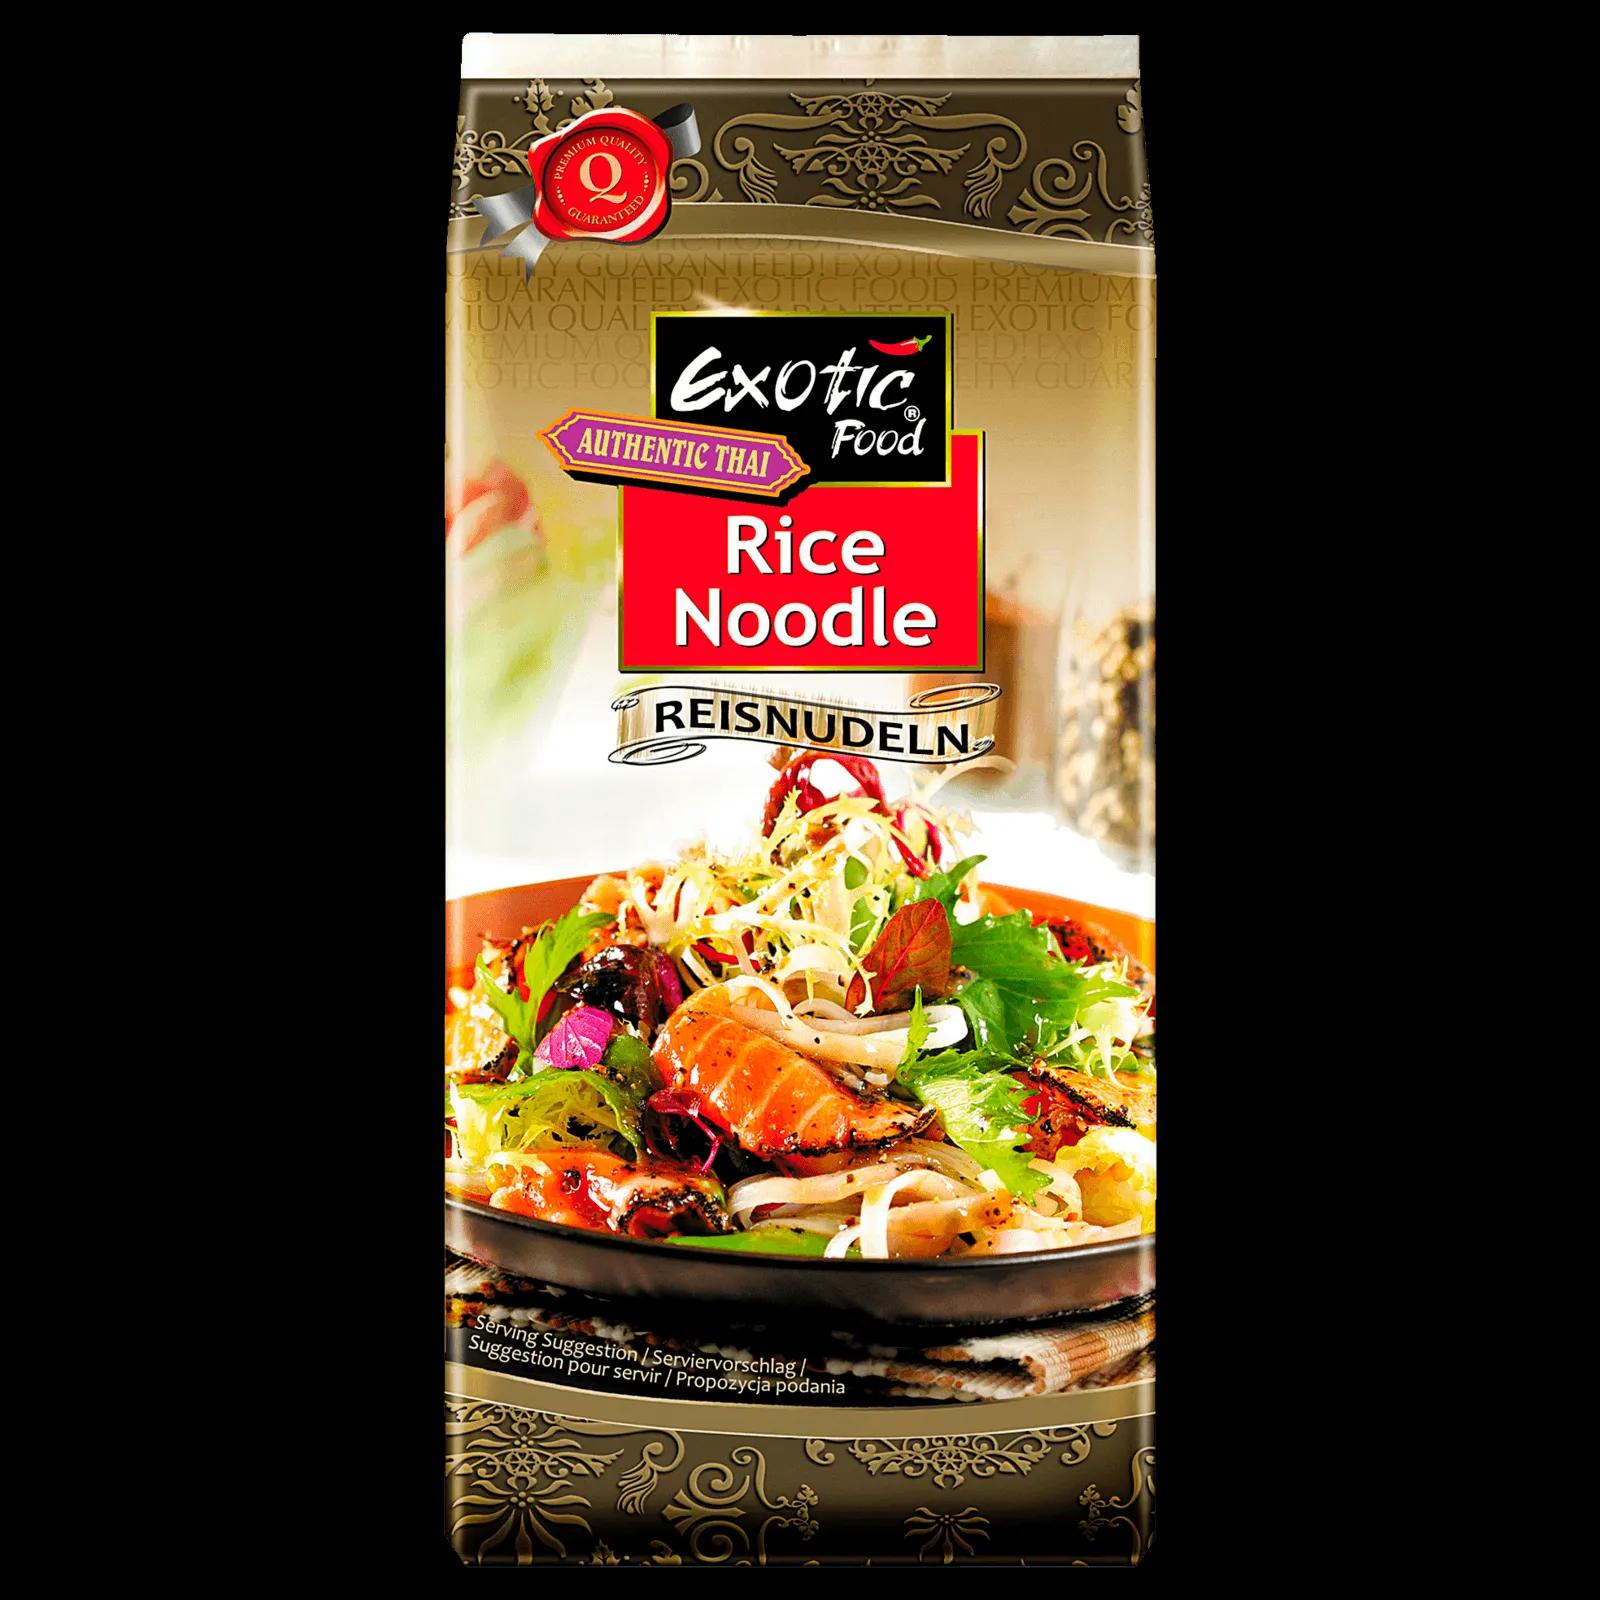 Exotic Food Authentic Thai Reisnudeln 250g bei REWE online bestellen!